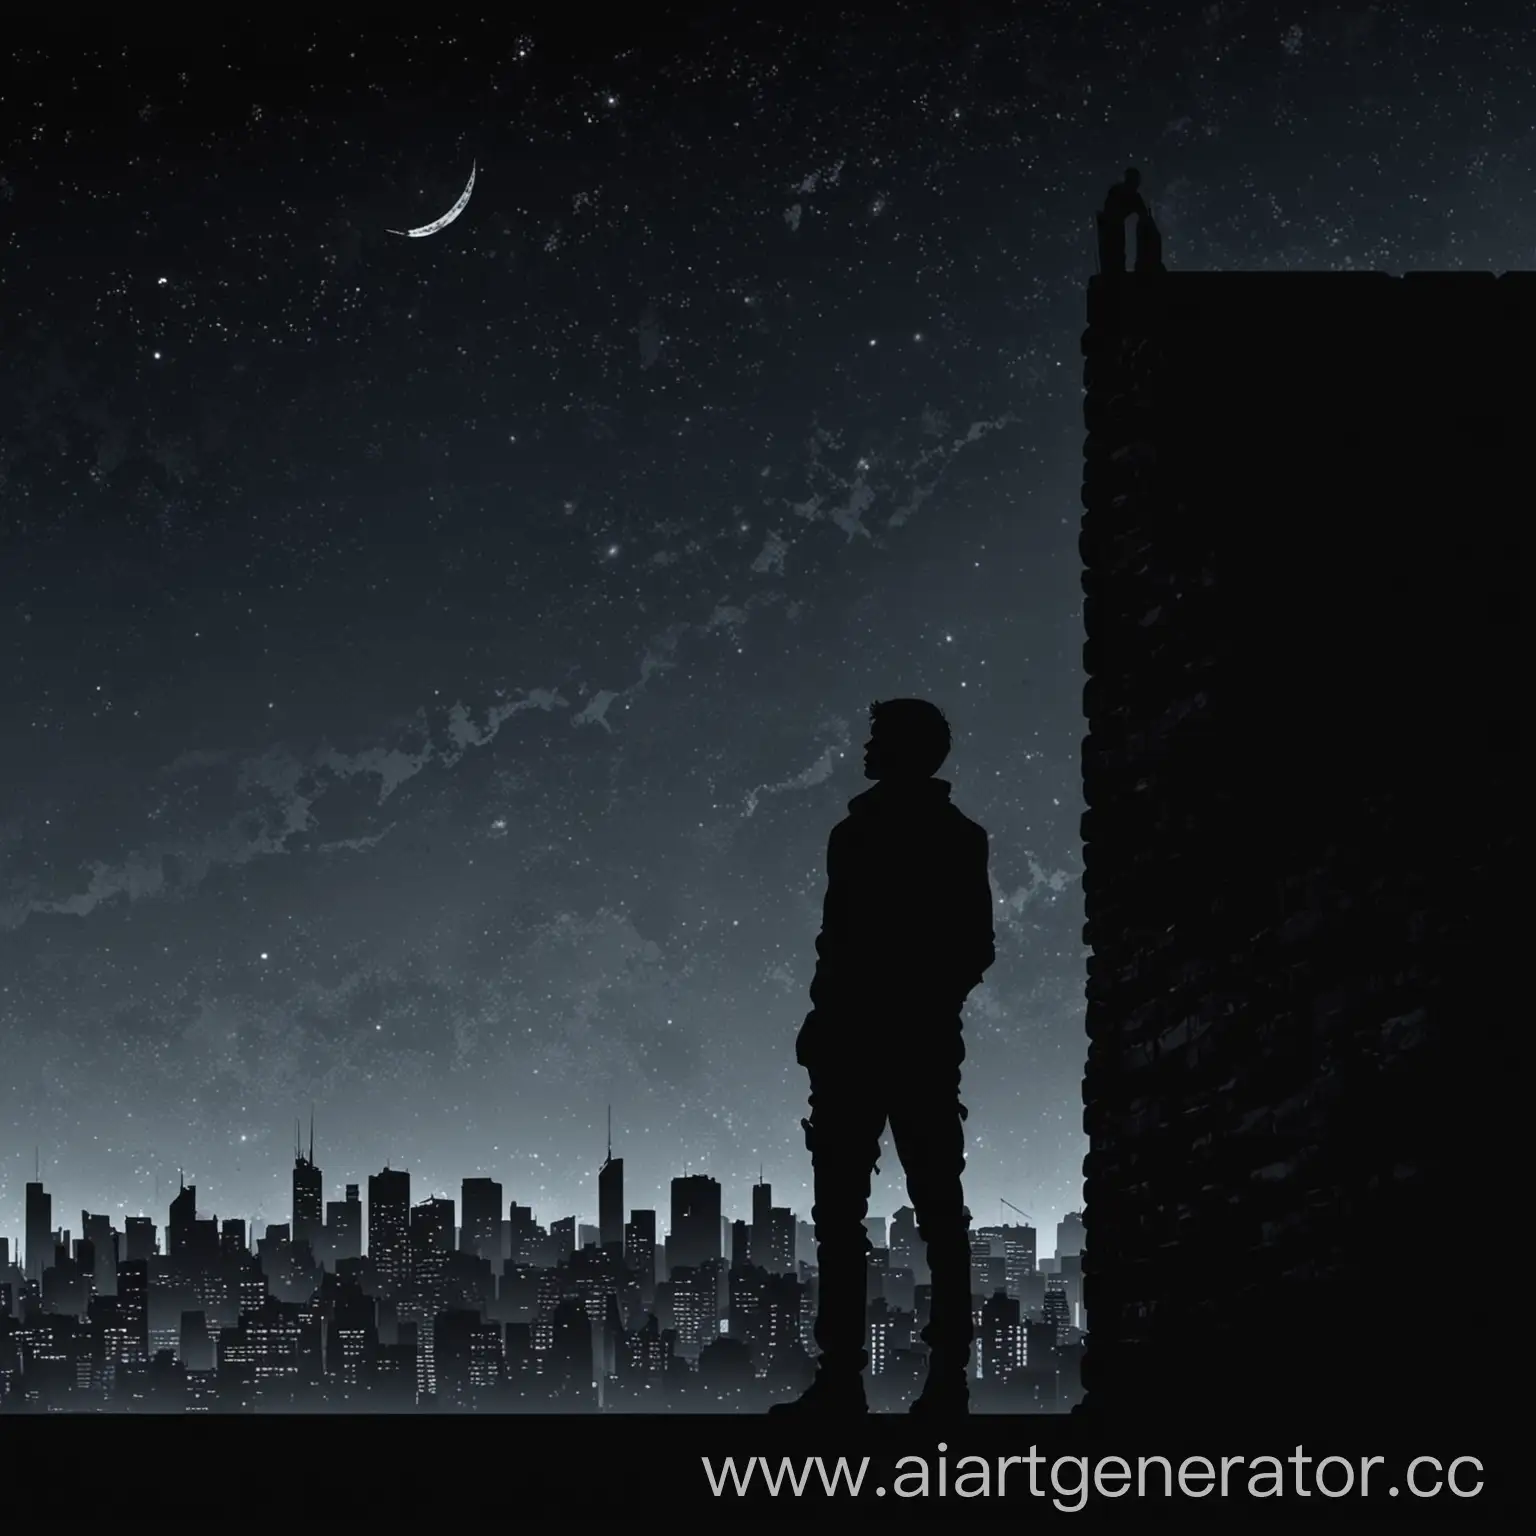 черный силует молодого мужчины, смотрящего на небо и опирающегося на силует стены на фоне ночного города в стиле игры Vector
